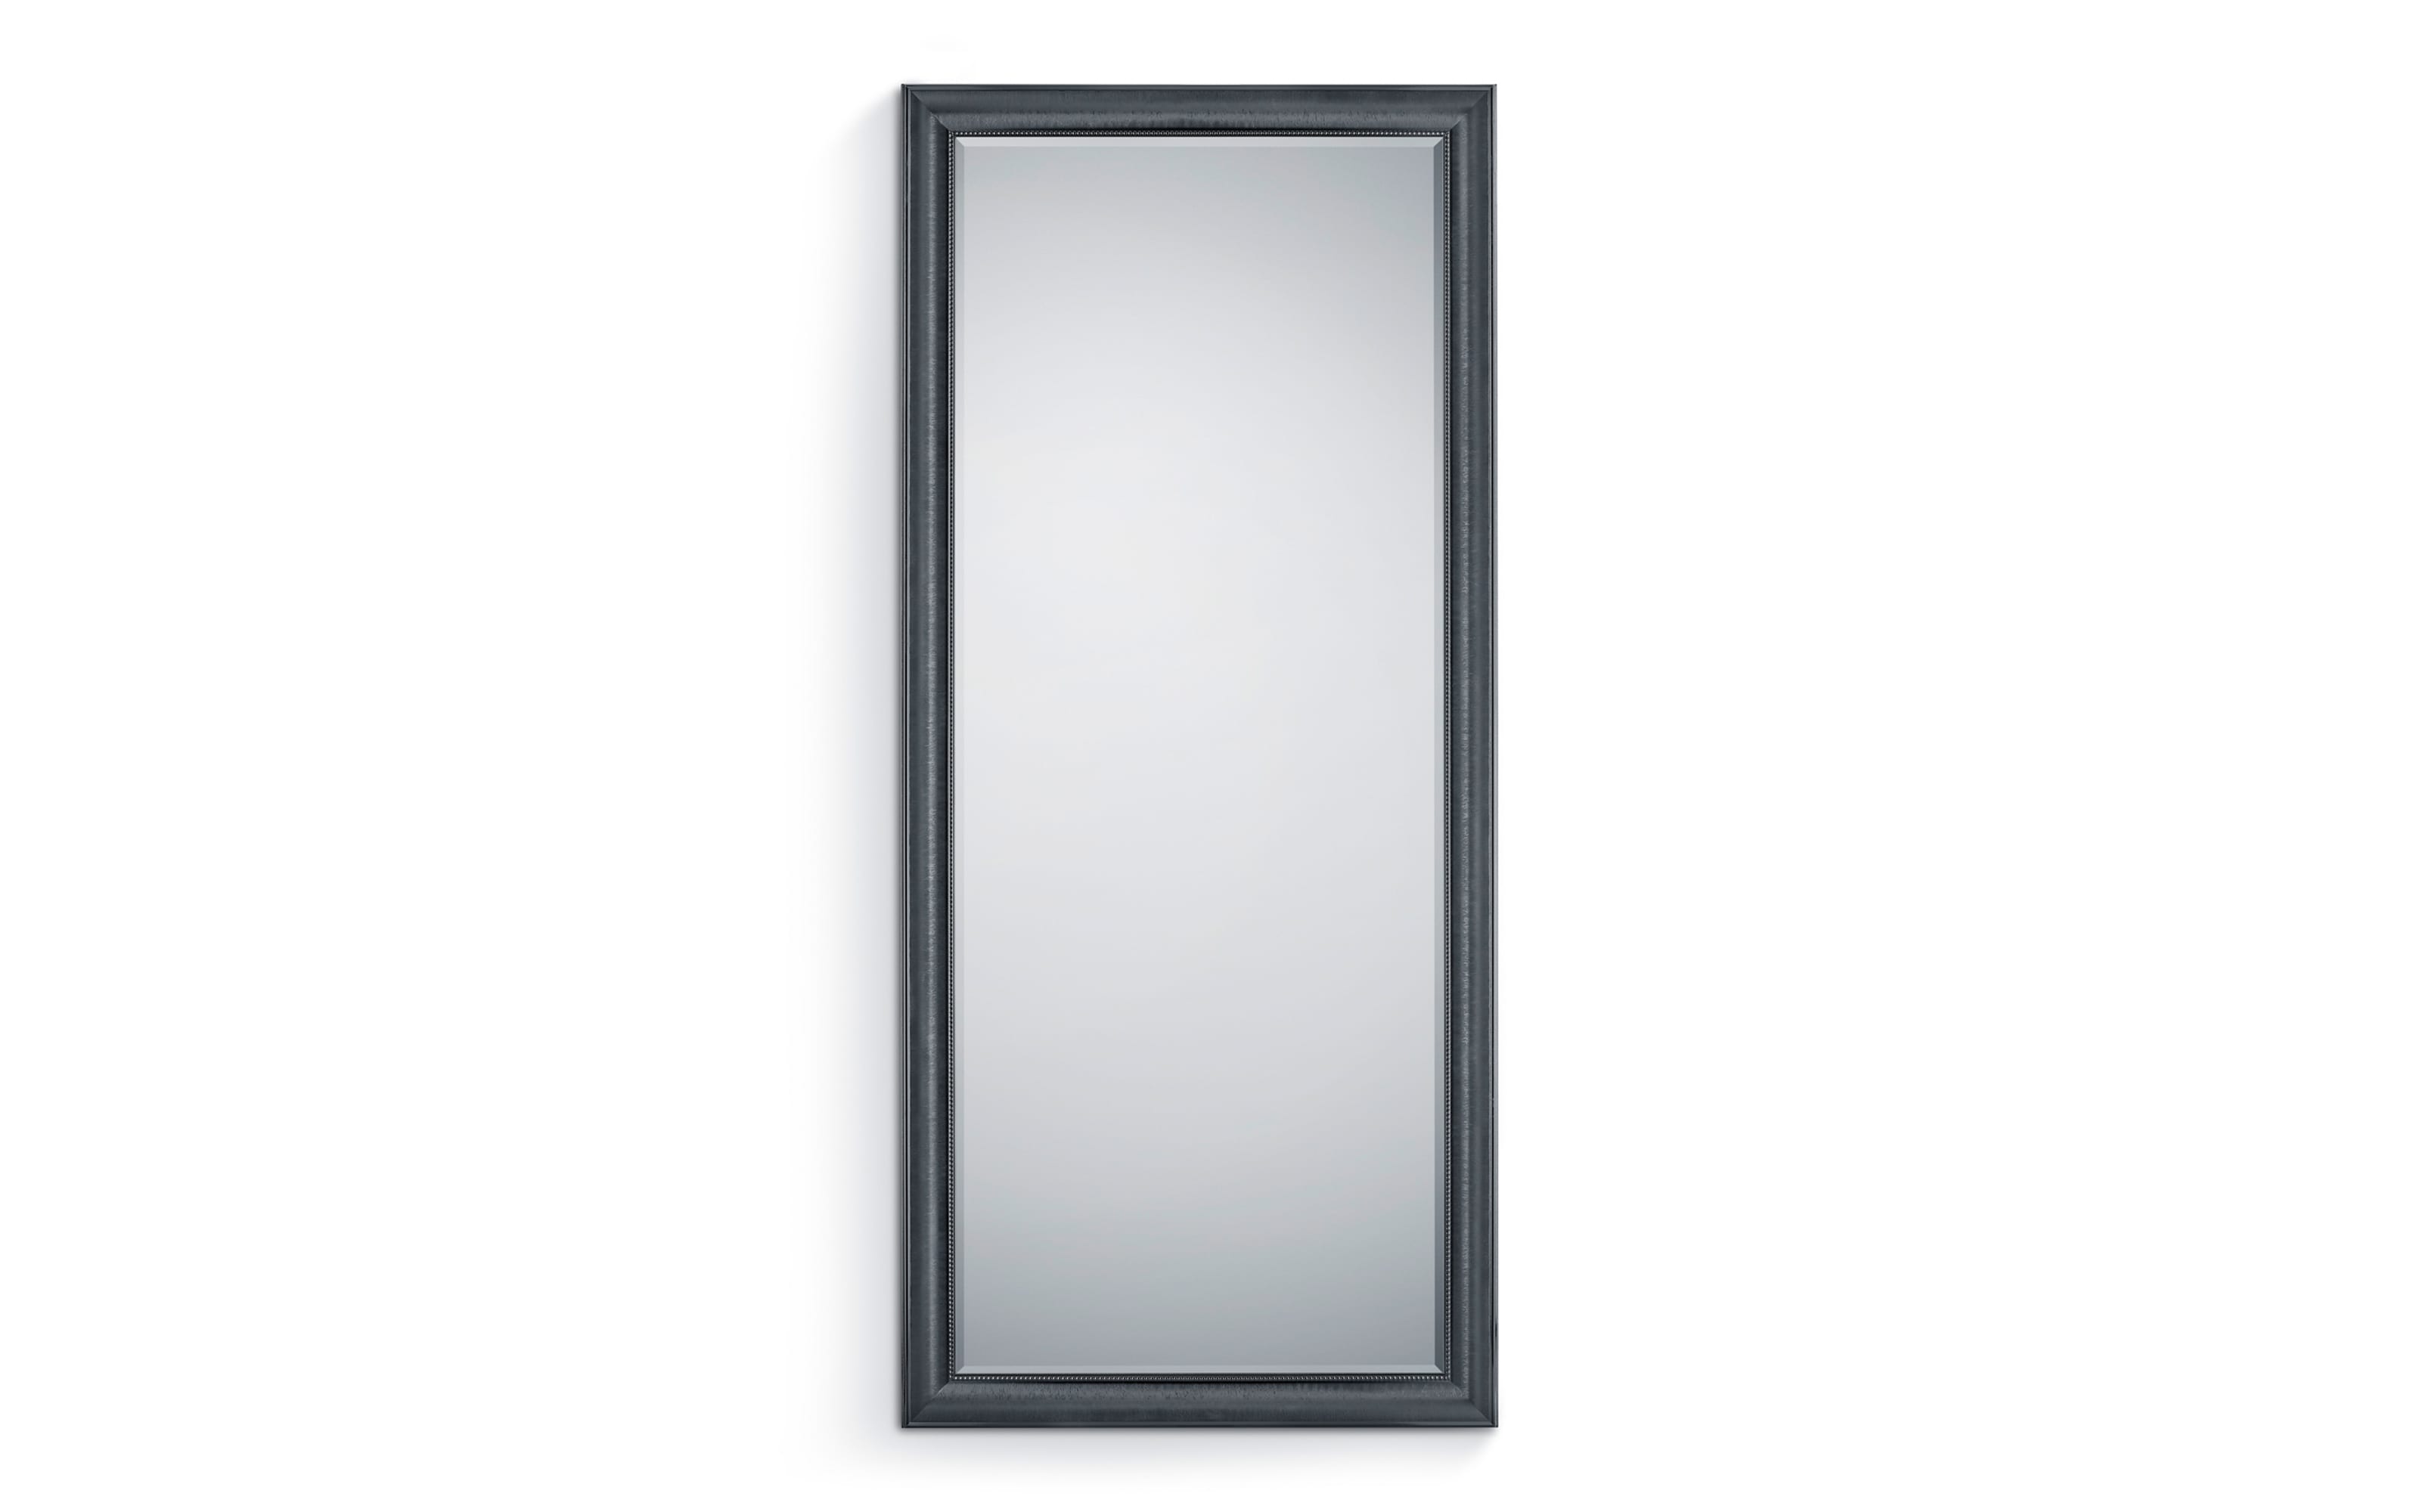 Rahmenspiegel Mia in schwarz, 80 x 180 cm 